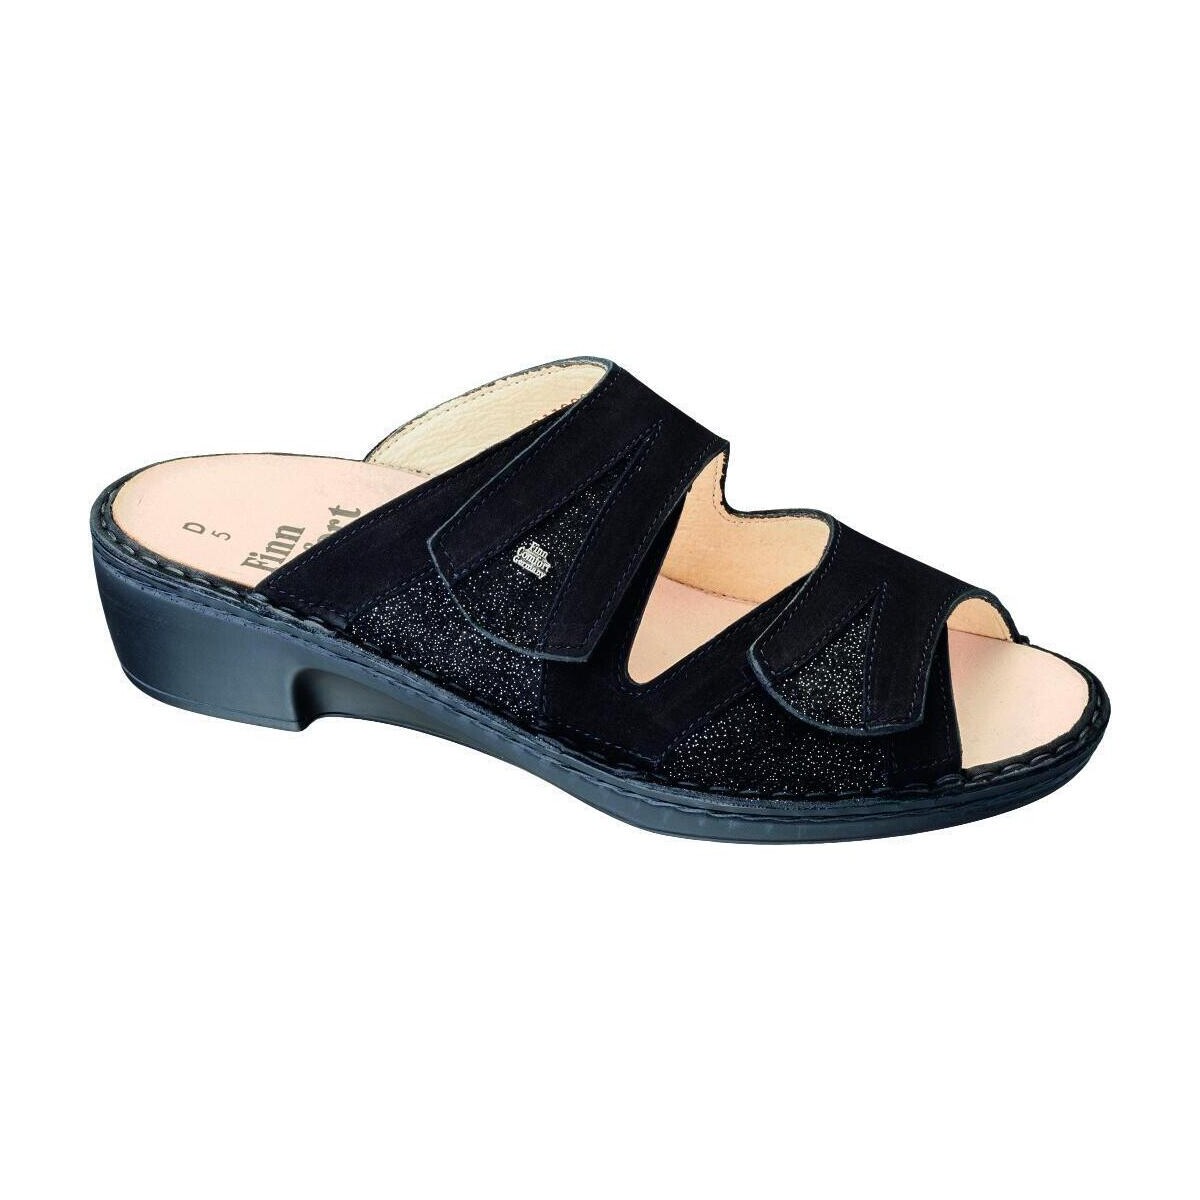 Schoenen Dames Leren slippers Finn Comfort 2689901397 Zwart